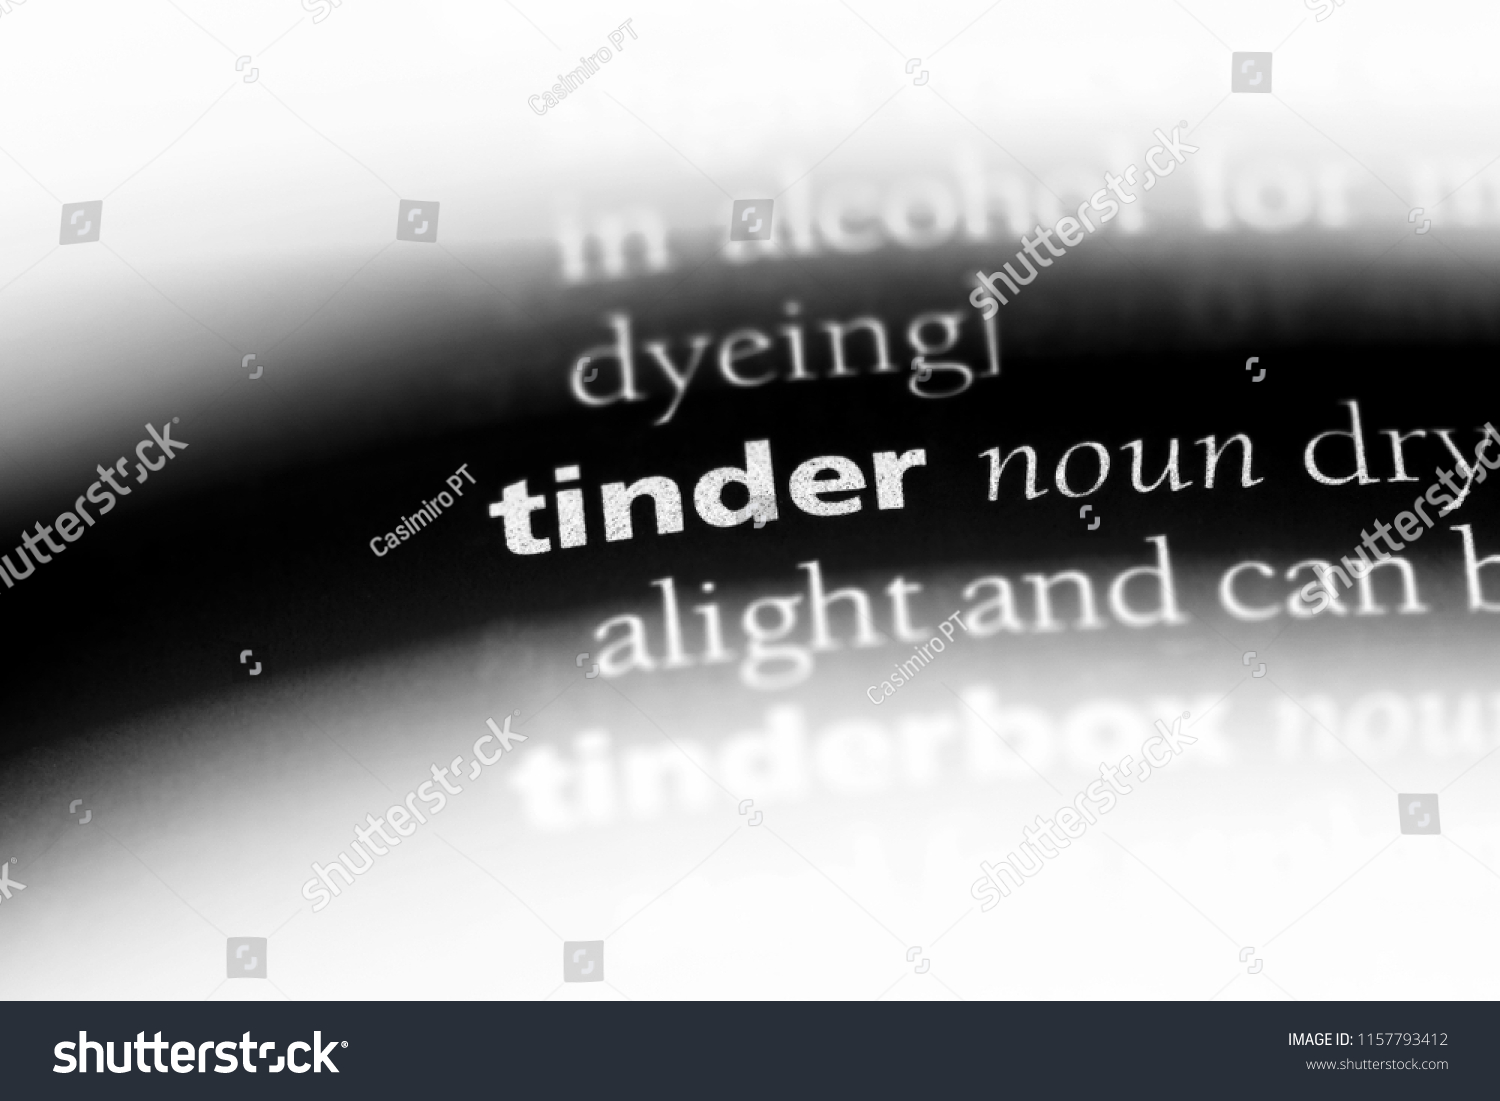 Define tinder